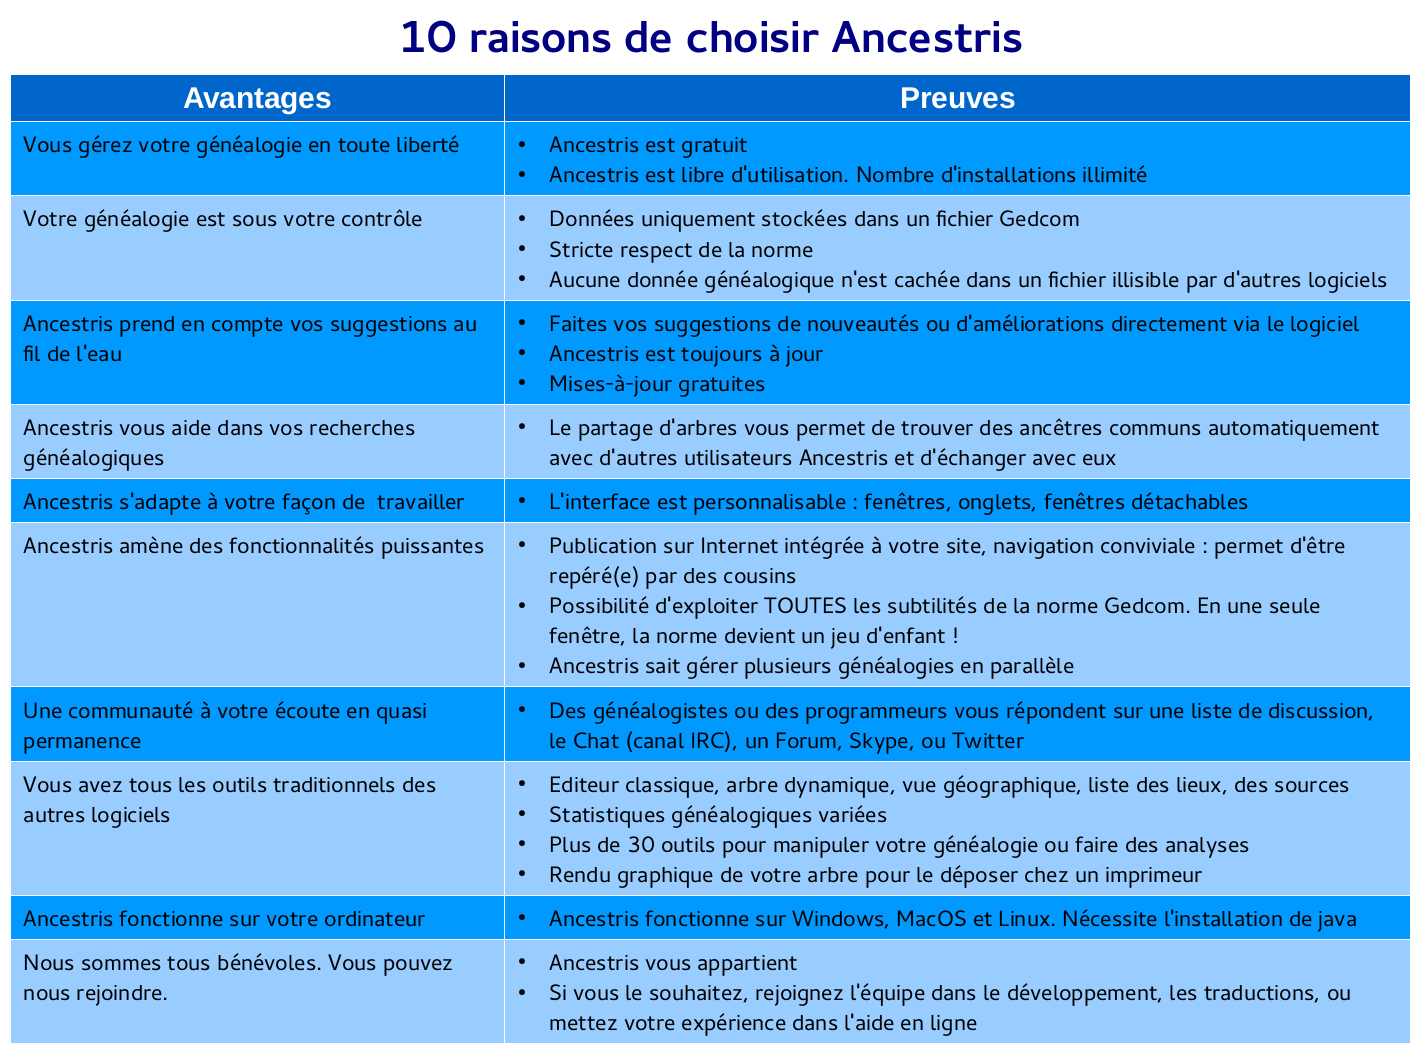 10 principales raisons de choisir Ancestris